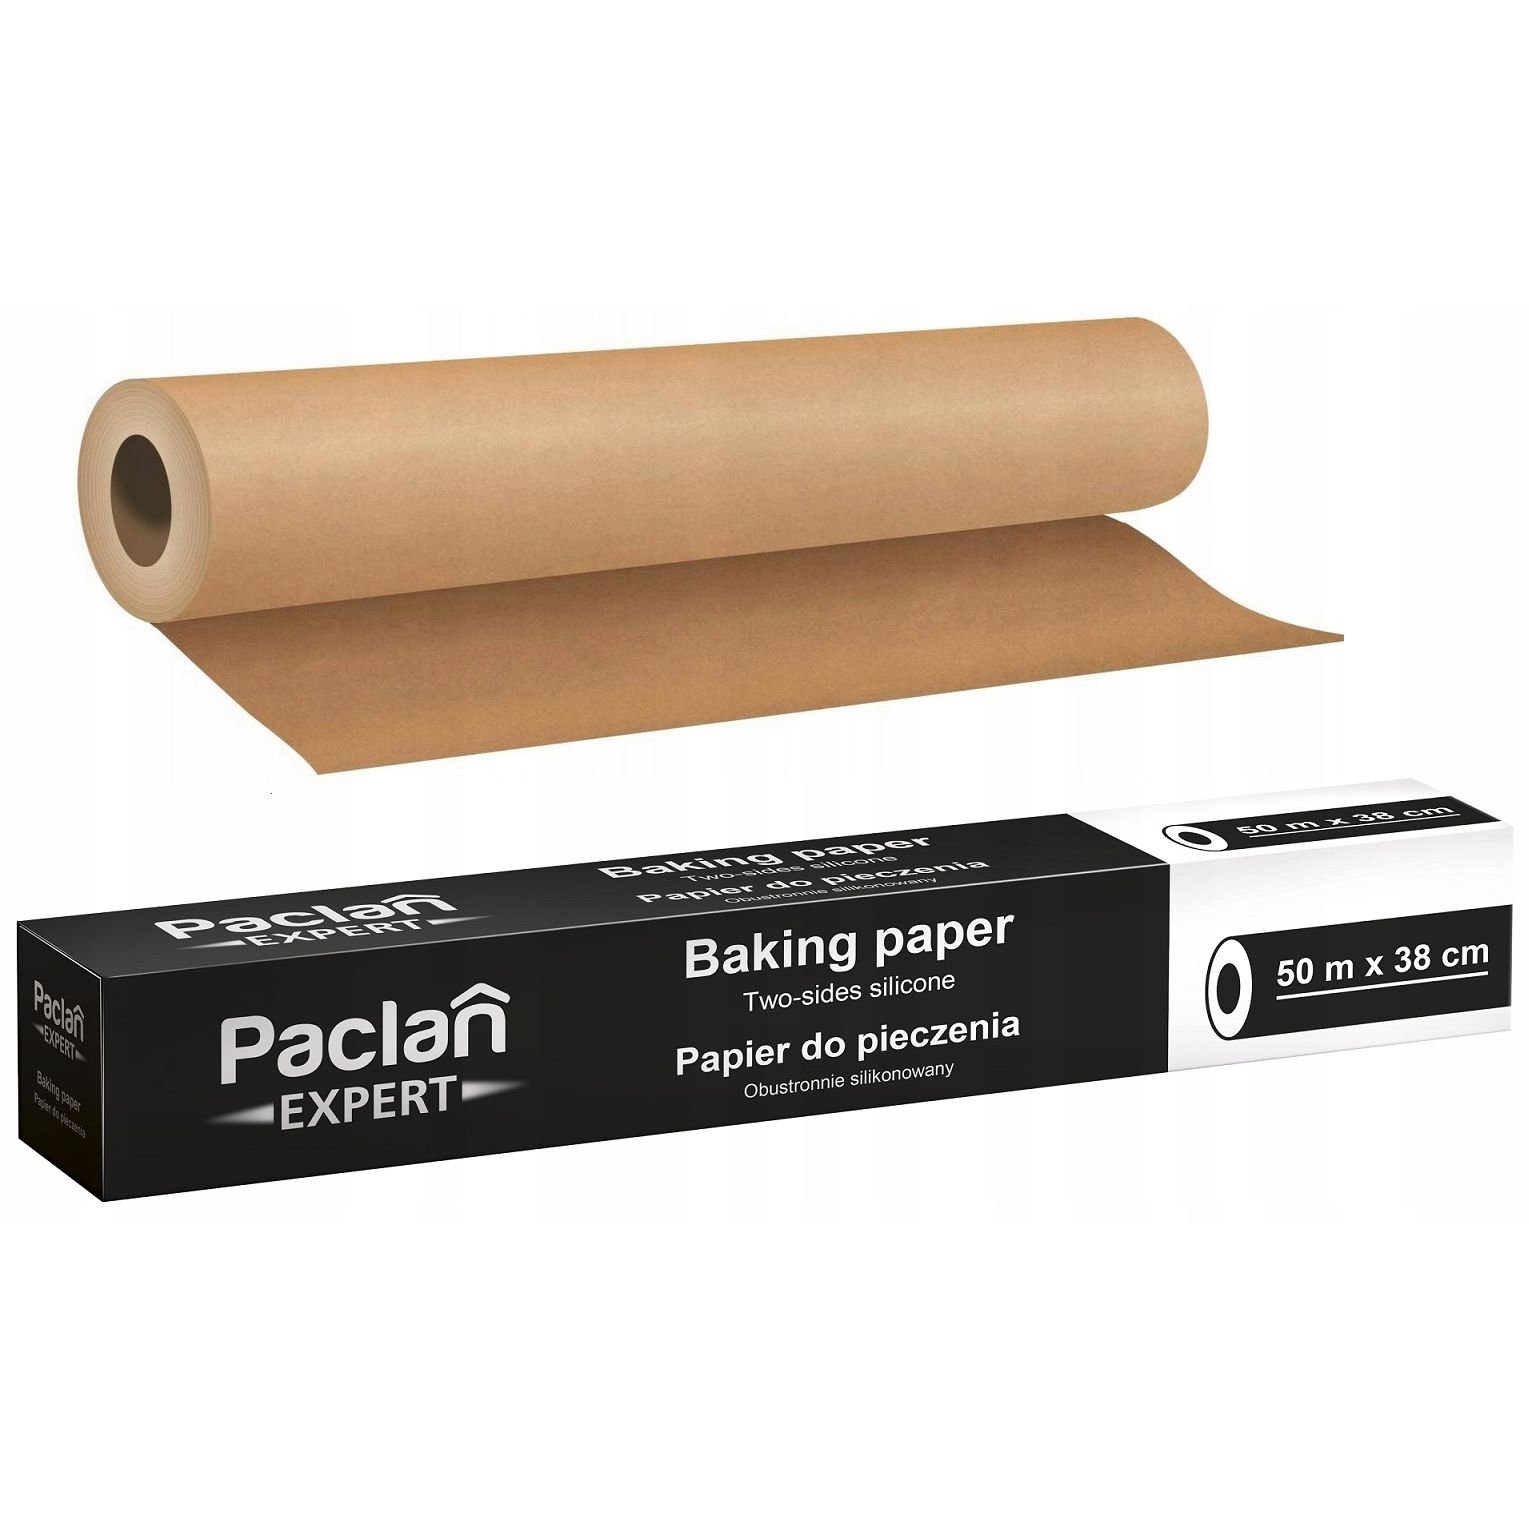 Пергамент для выпечки Paclan, 50 м (5900942134083) - фото 2